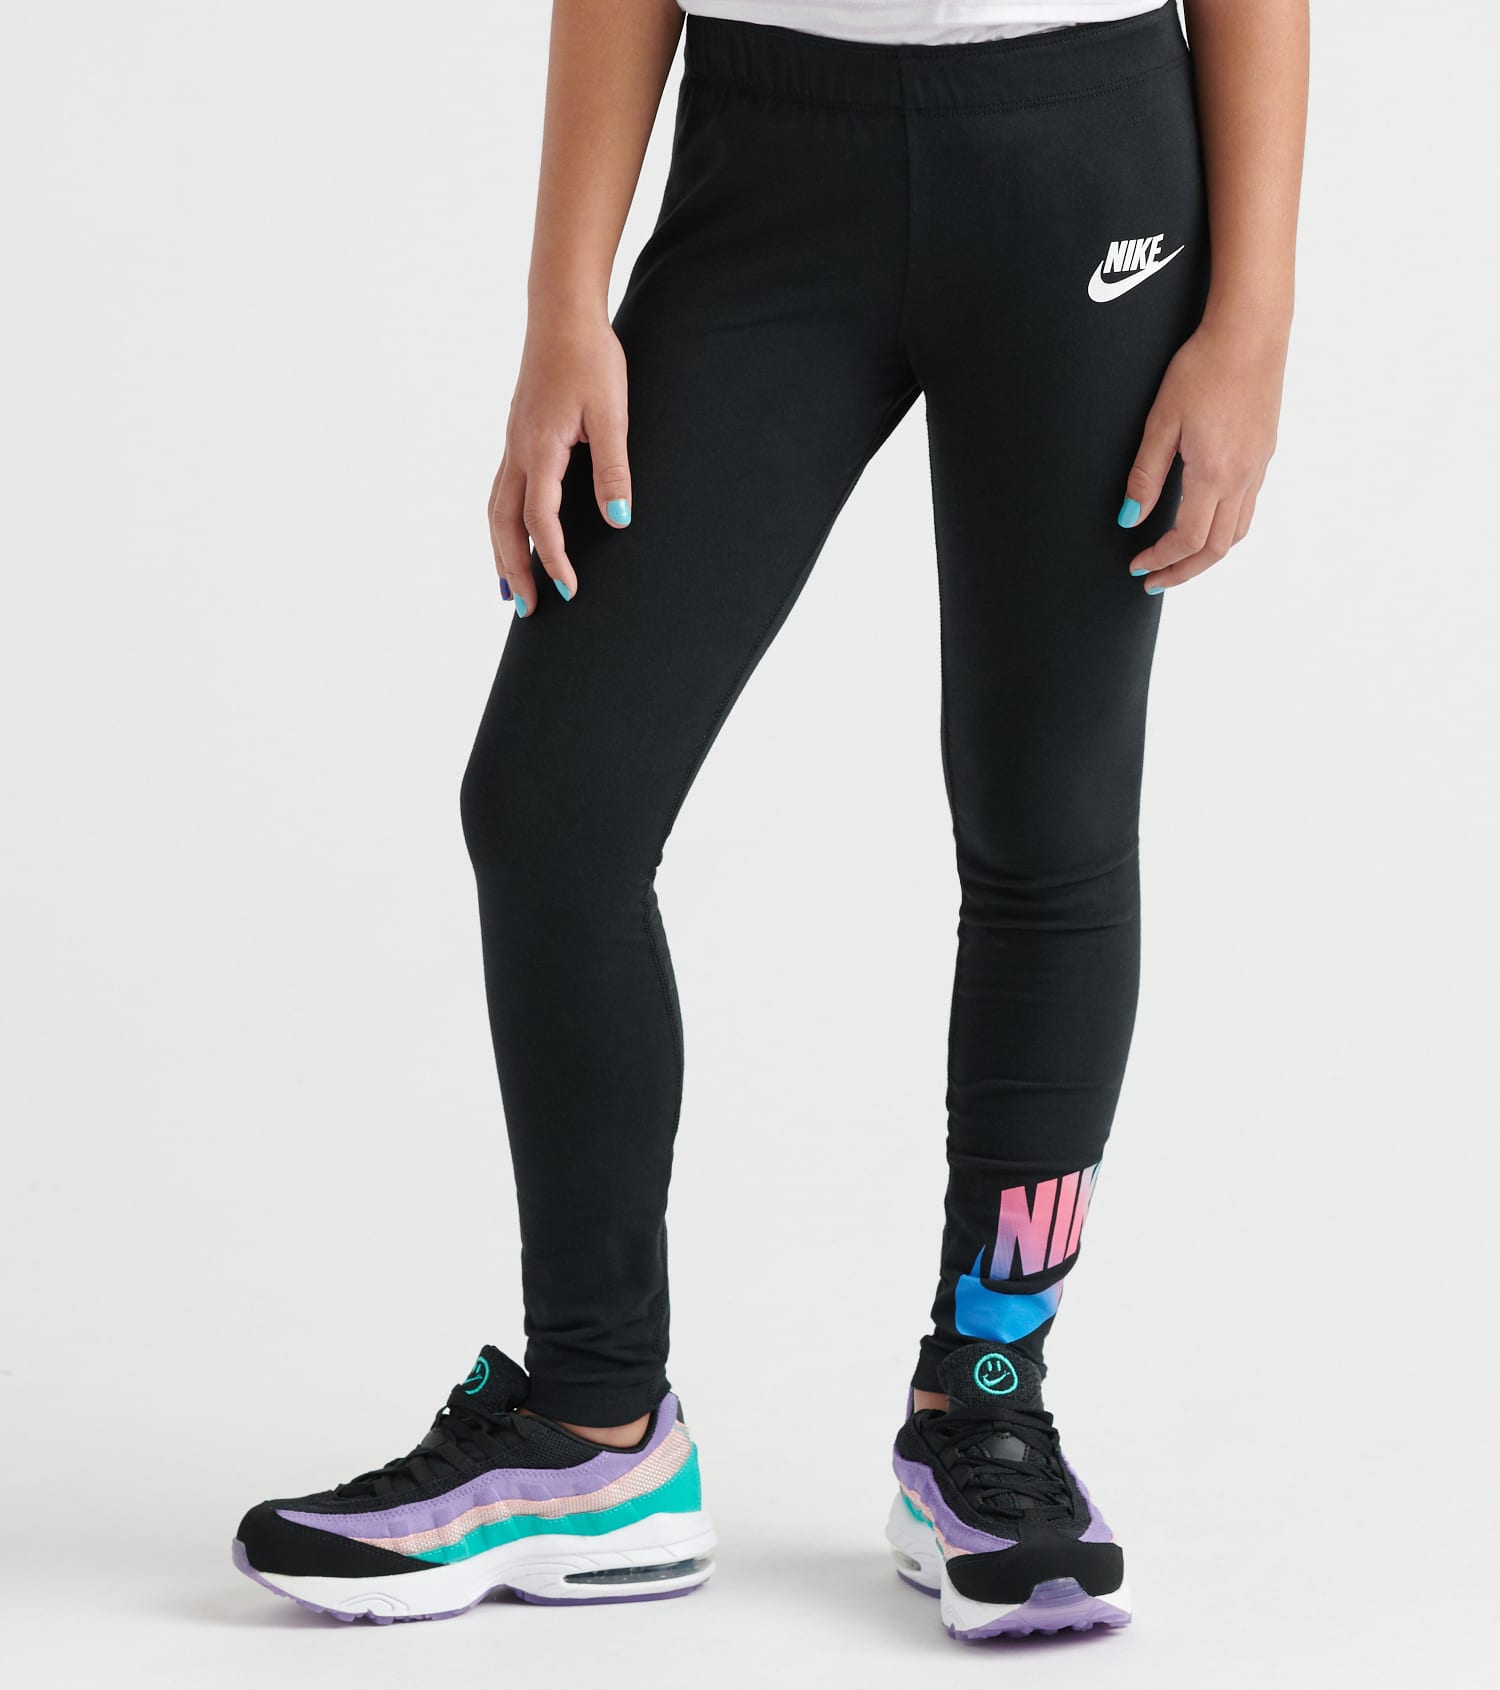 Nike Girls 7-16 NSW Favorites FF Legging (Black) - CJ6946-010 | Jimmy Jazz